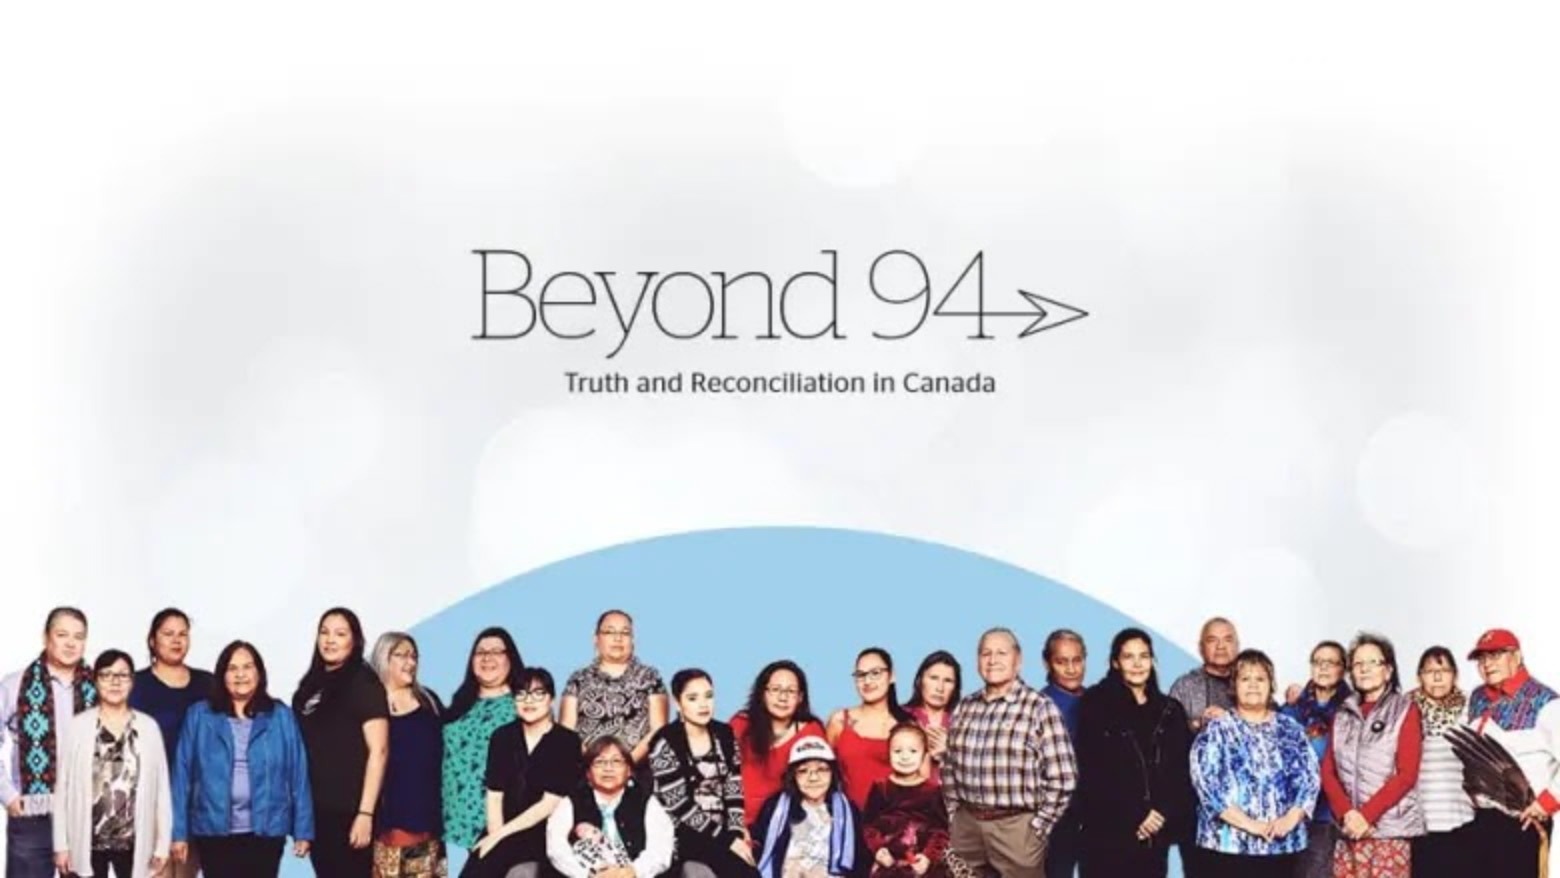 Un groupe de personnes autochtones se trouve au bas de l'image. Truth and Reconciliation in Canada est écrit au-dessus d'elles.